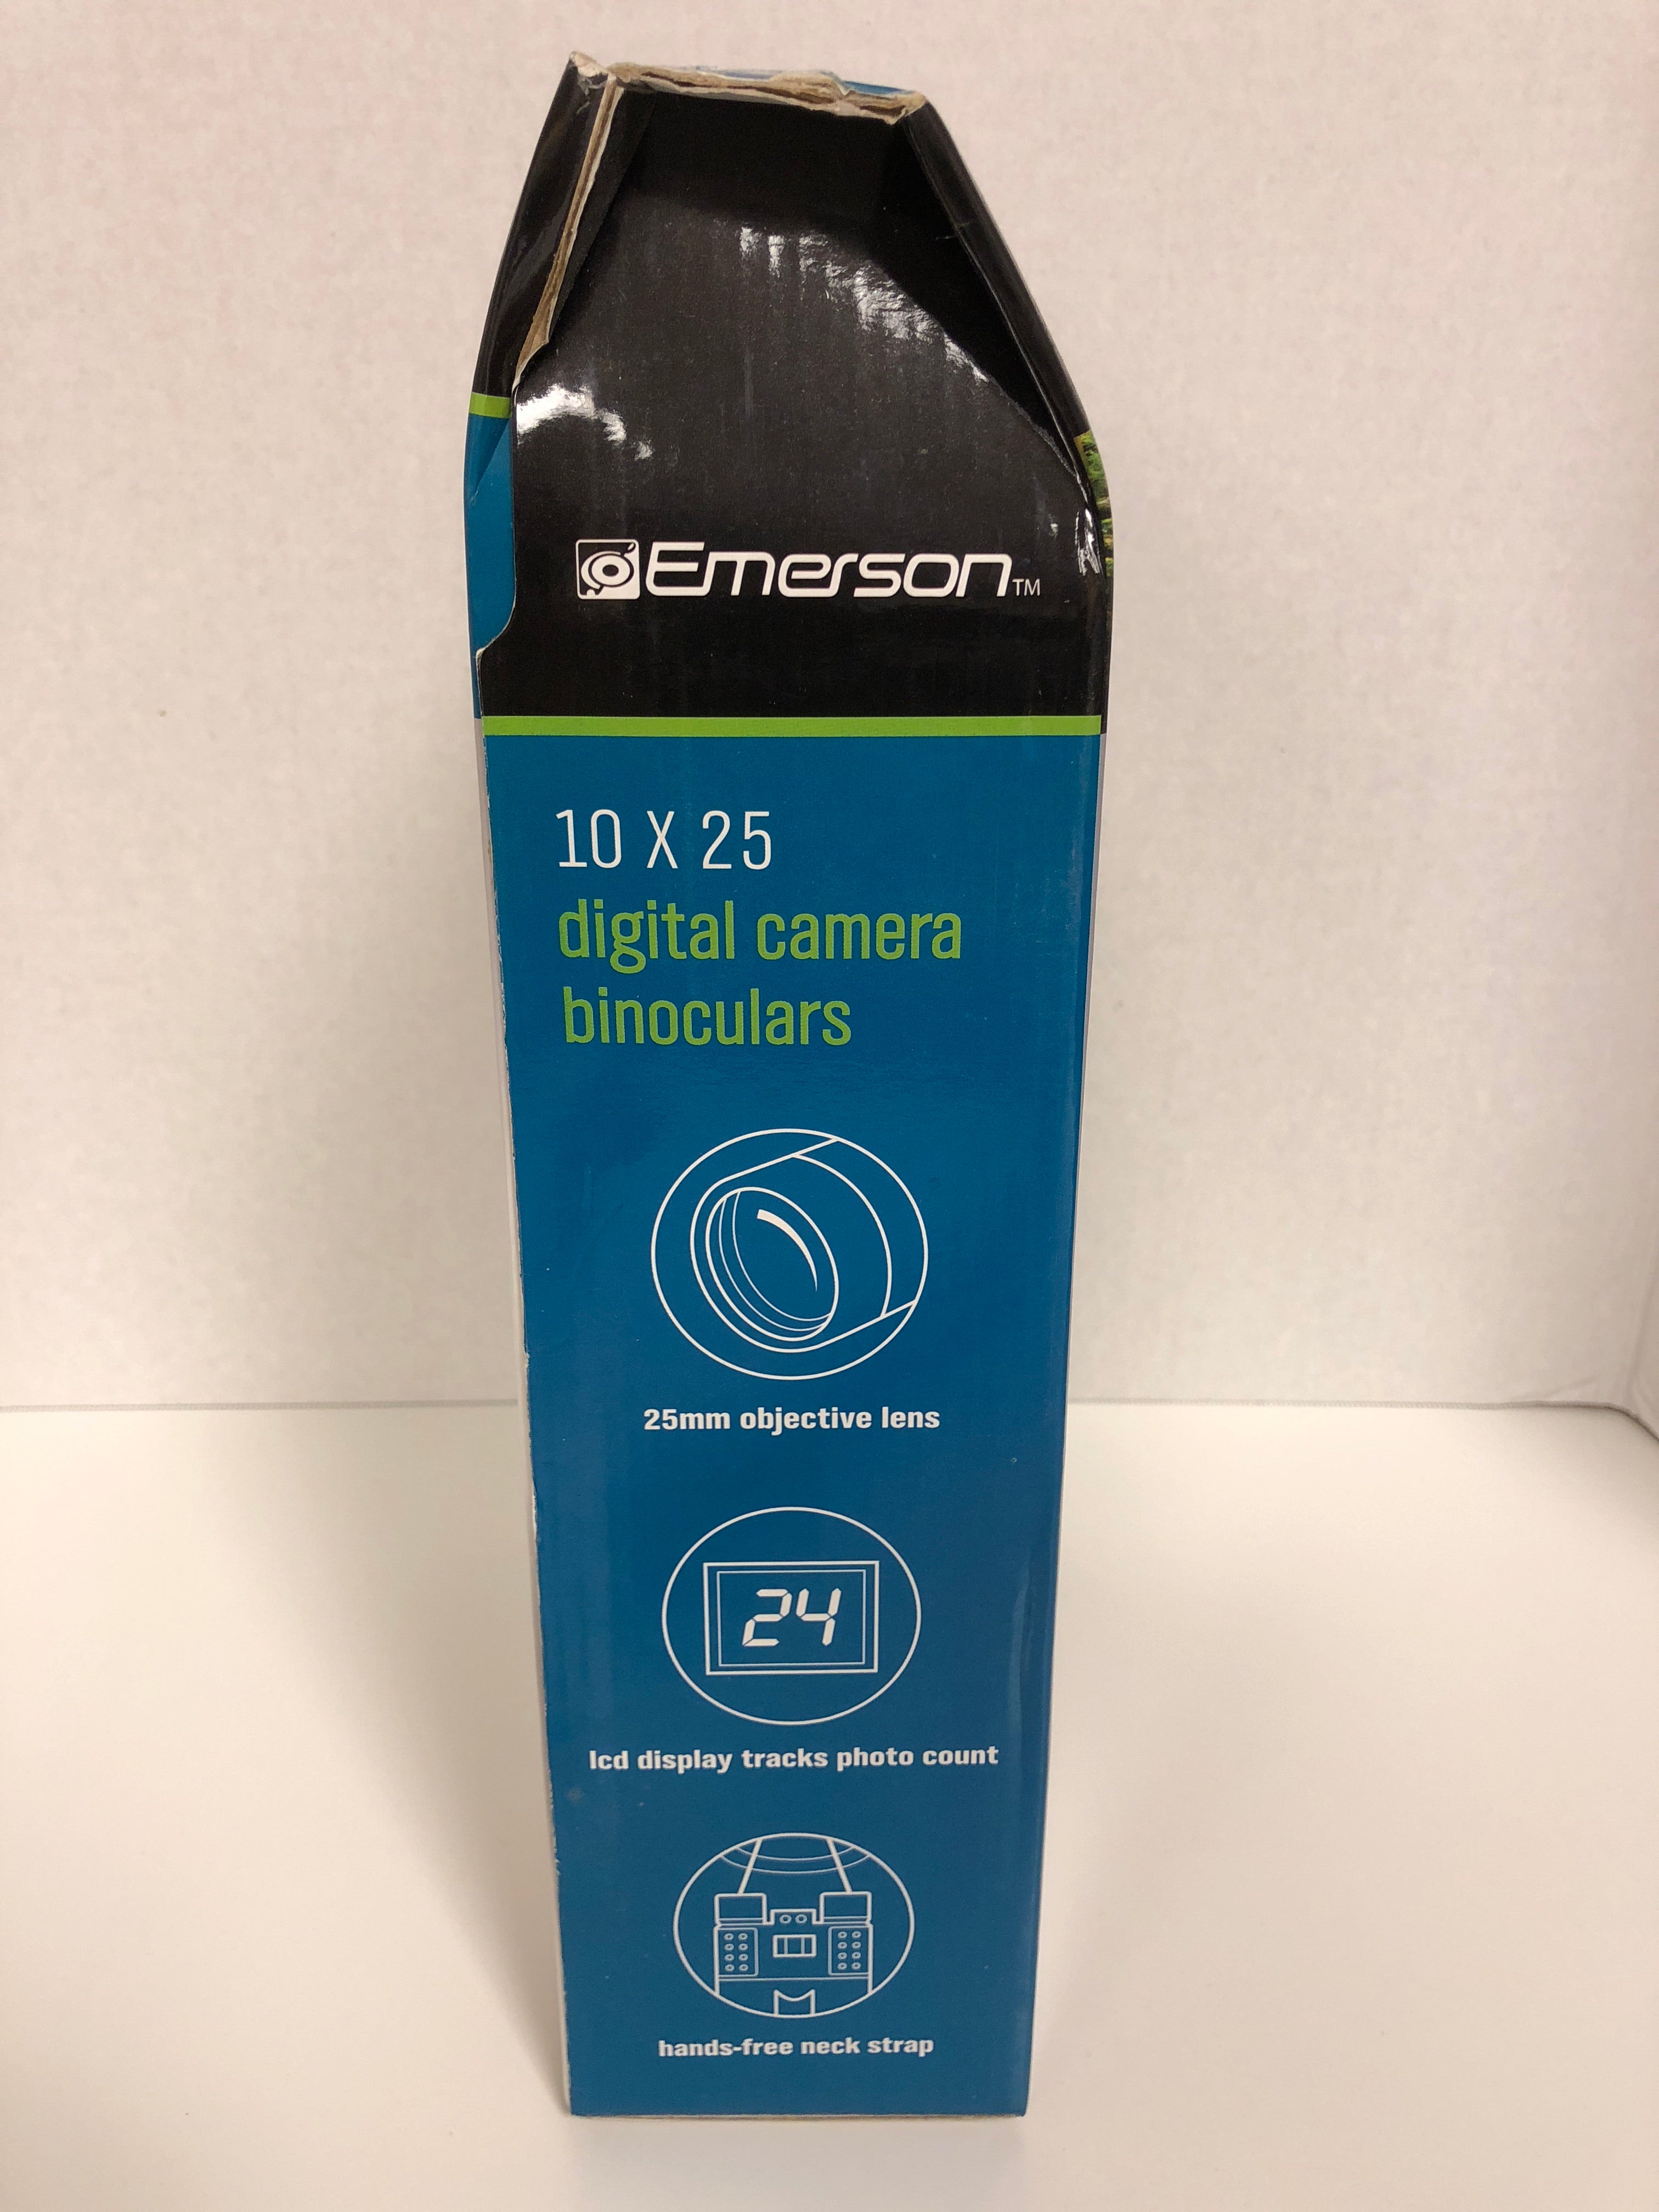 Emerson 10 x 25 Digital Camera Binoculars Magnifies Subject Built-In Digital Camera Image